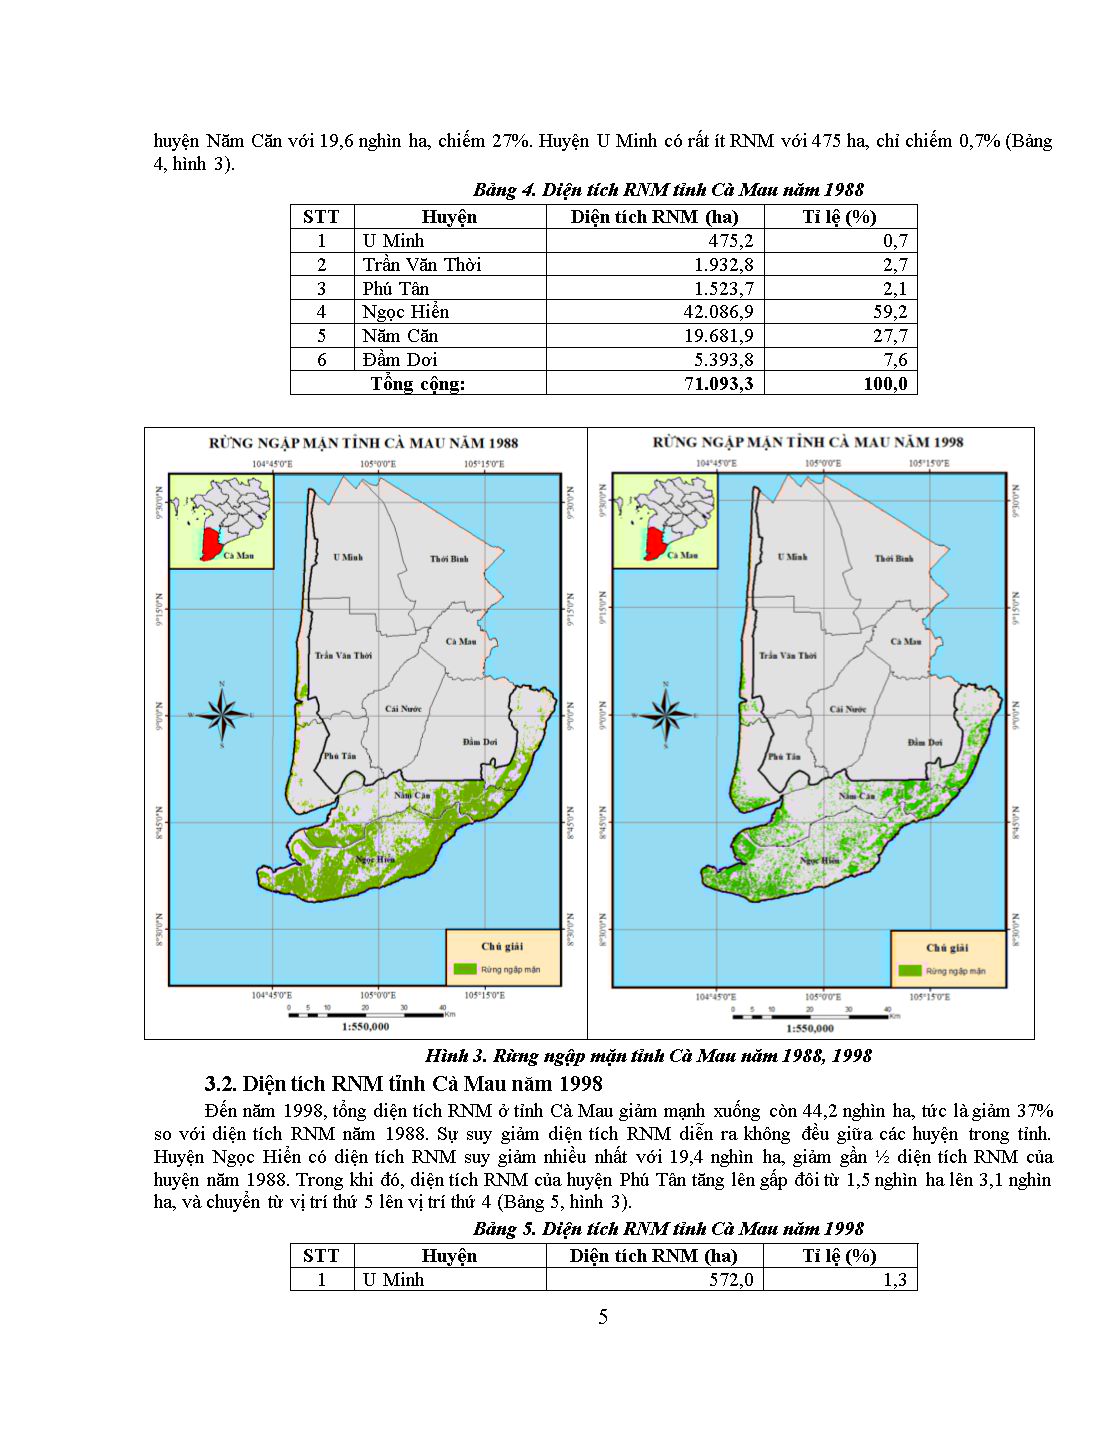 Đánh giá biến động rừng ngập mặn tỉnh Cà Mau trên cơ sở ảnh vệ tinh giai đoạn 1988-2018 trang 5